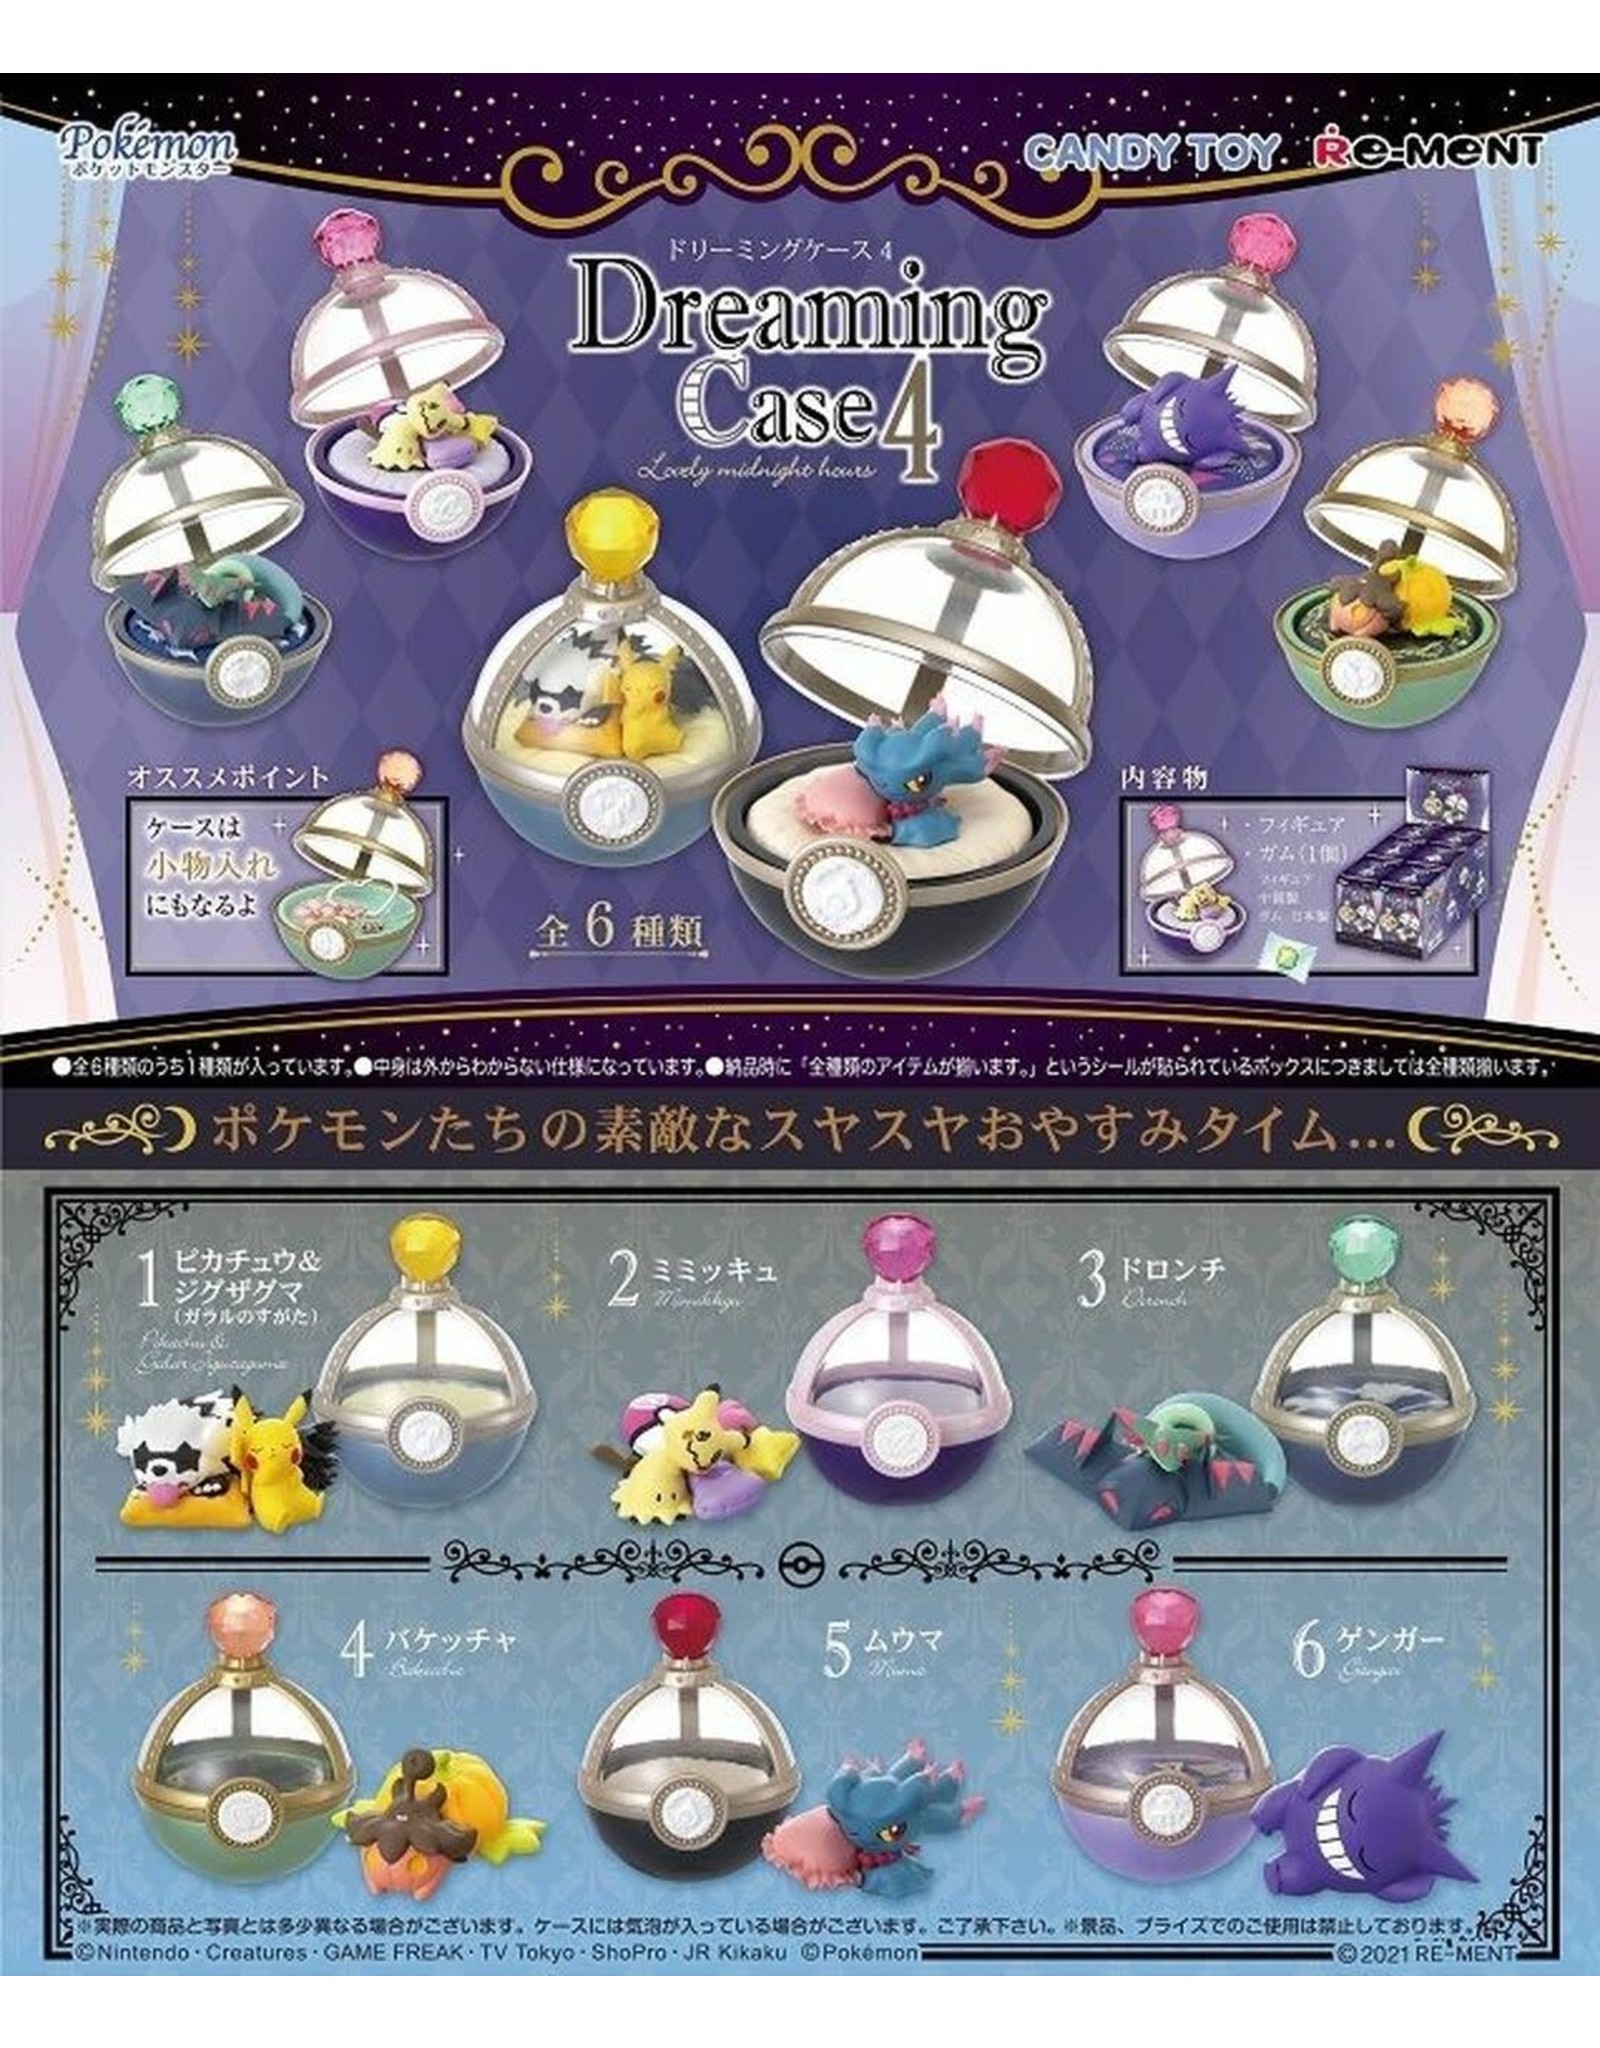 Re-Ment - Pokémon - Dreaming Case 4 Lovely Midnight Hours - 1 willekeurig item